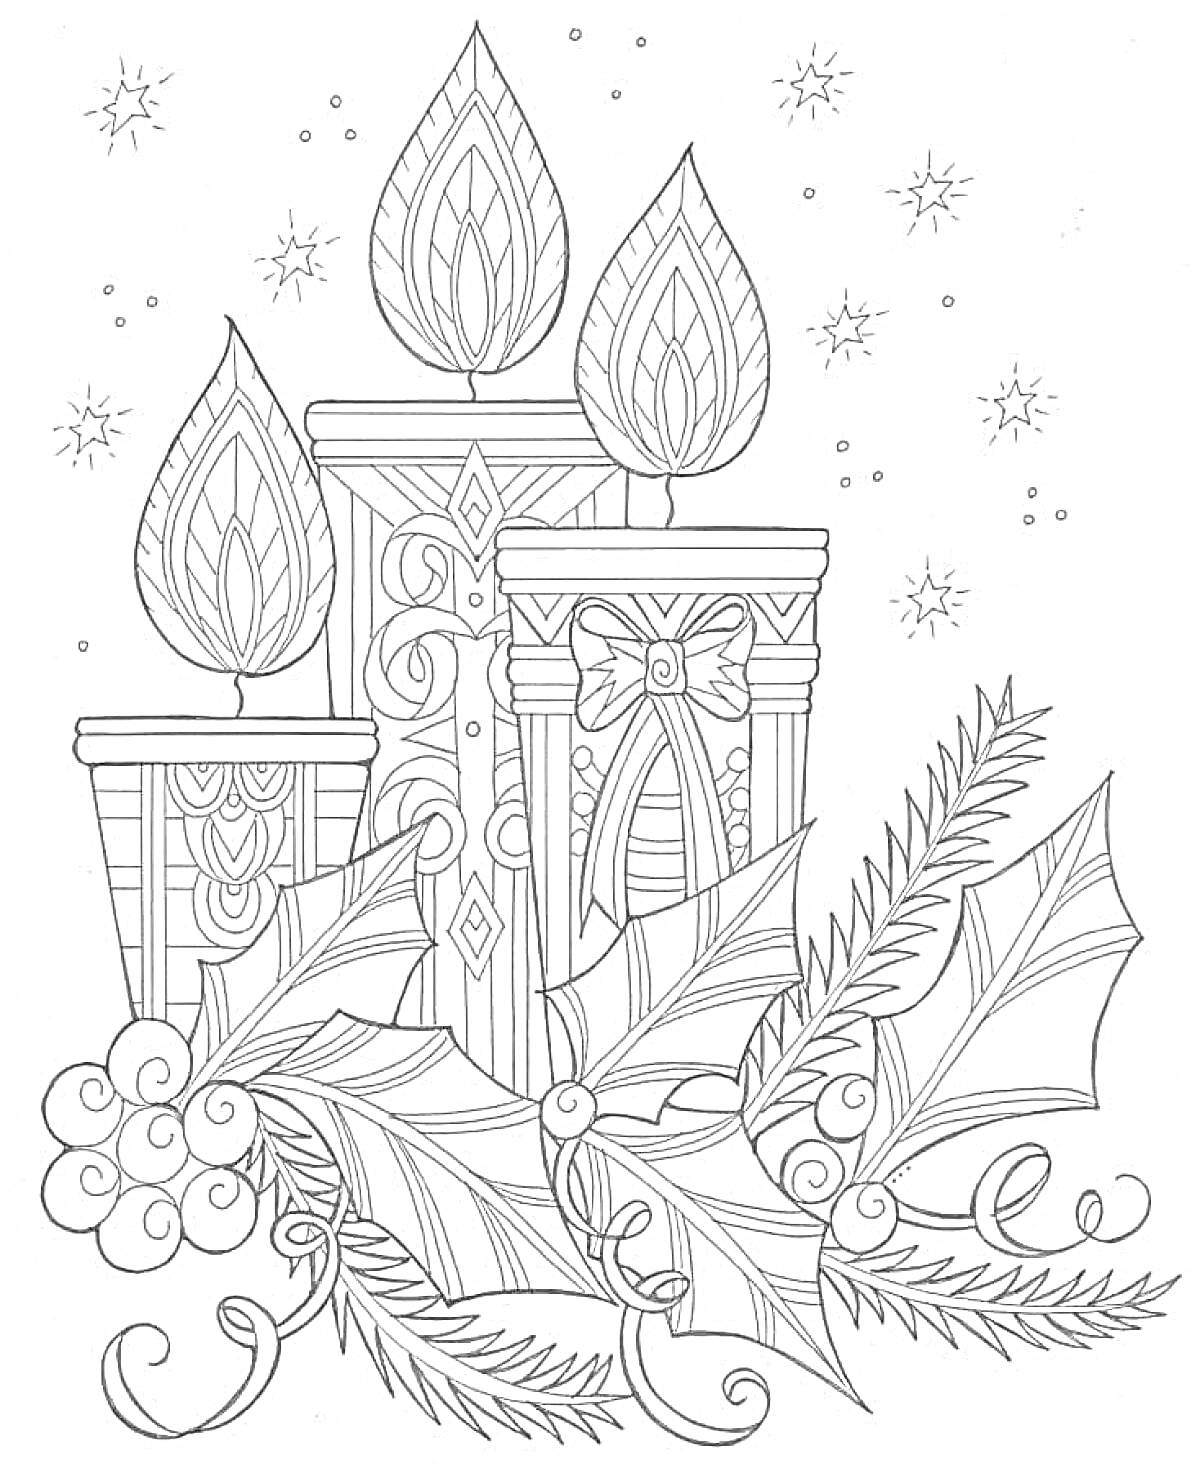 Раскраска Рождественские свечи с узорами, ветками падуба, ягодами и снежинками